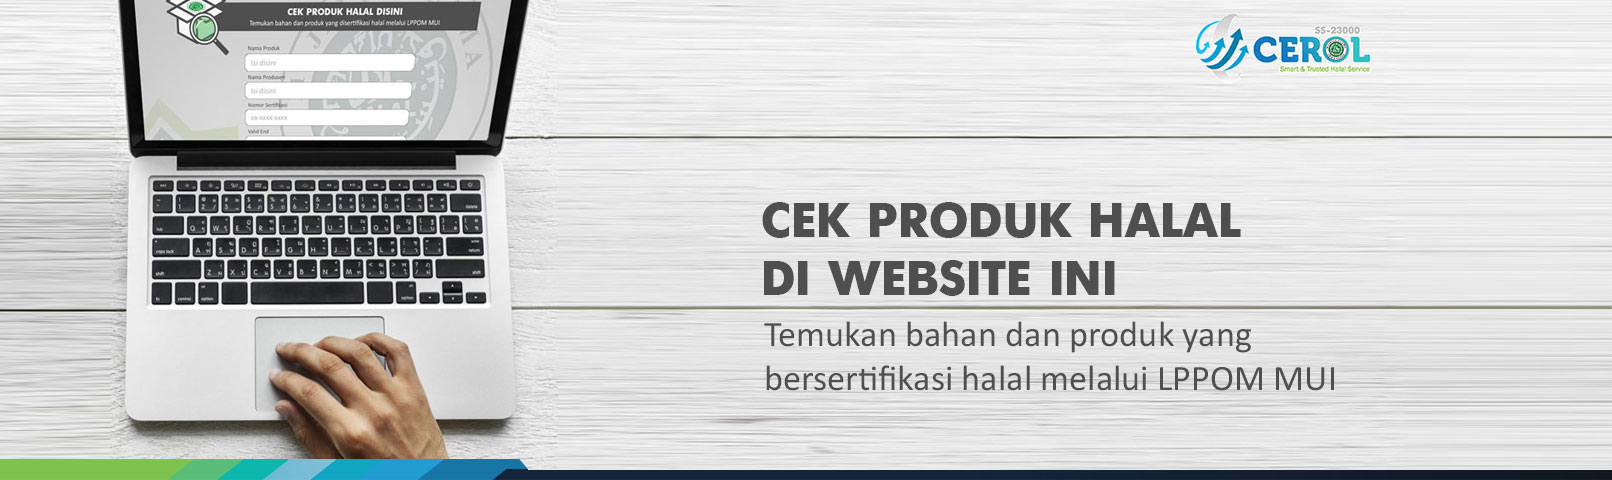 Cek Produk Halal Indonesia